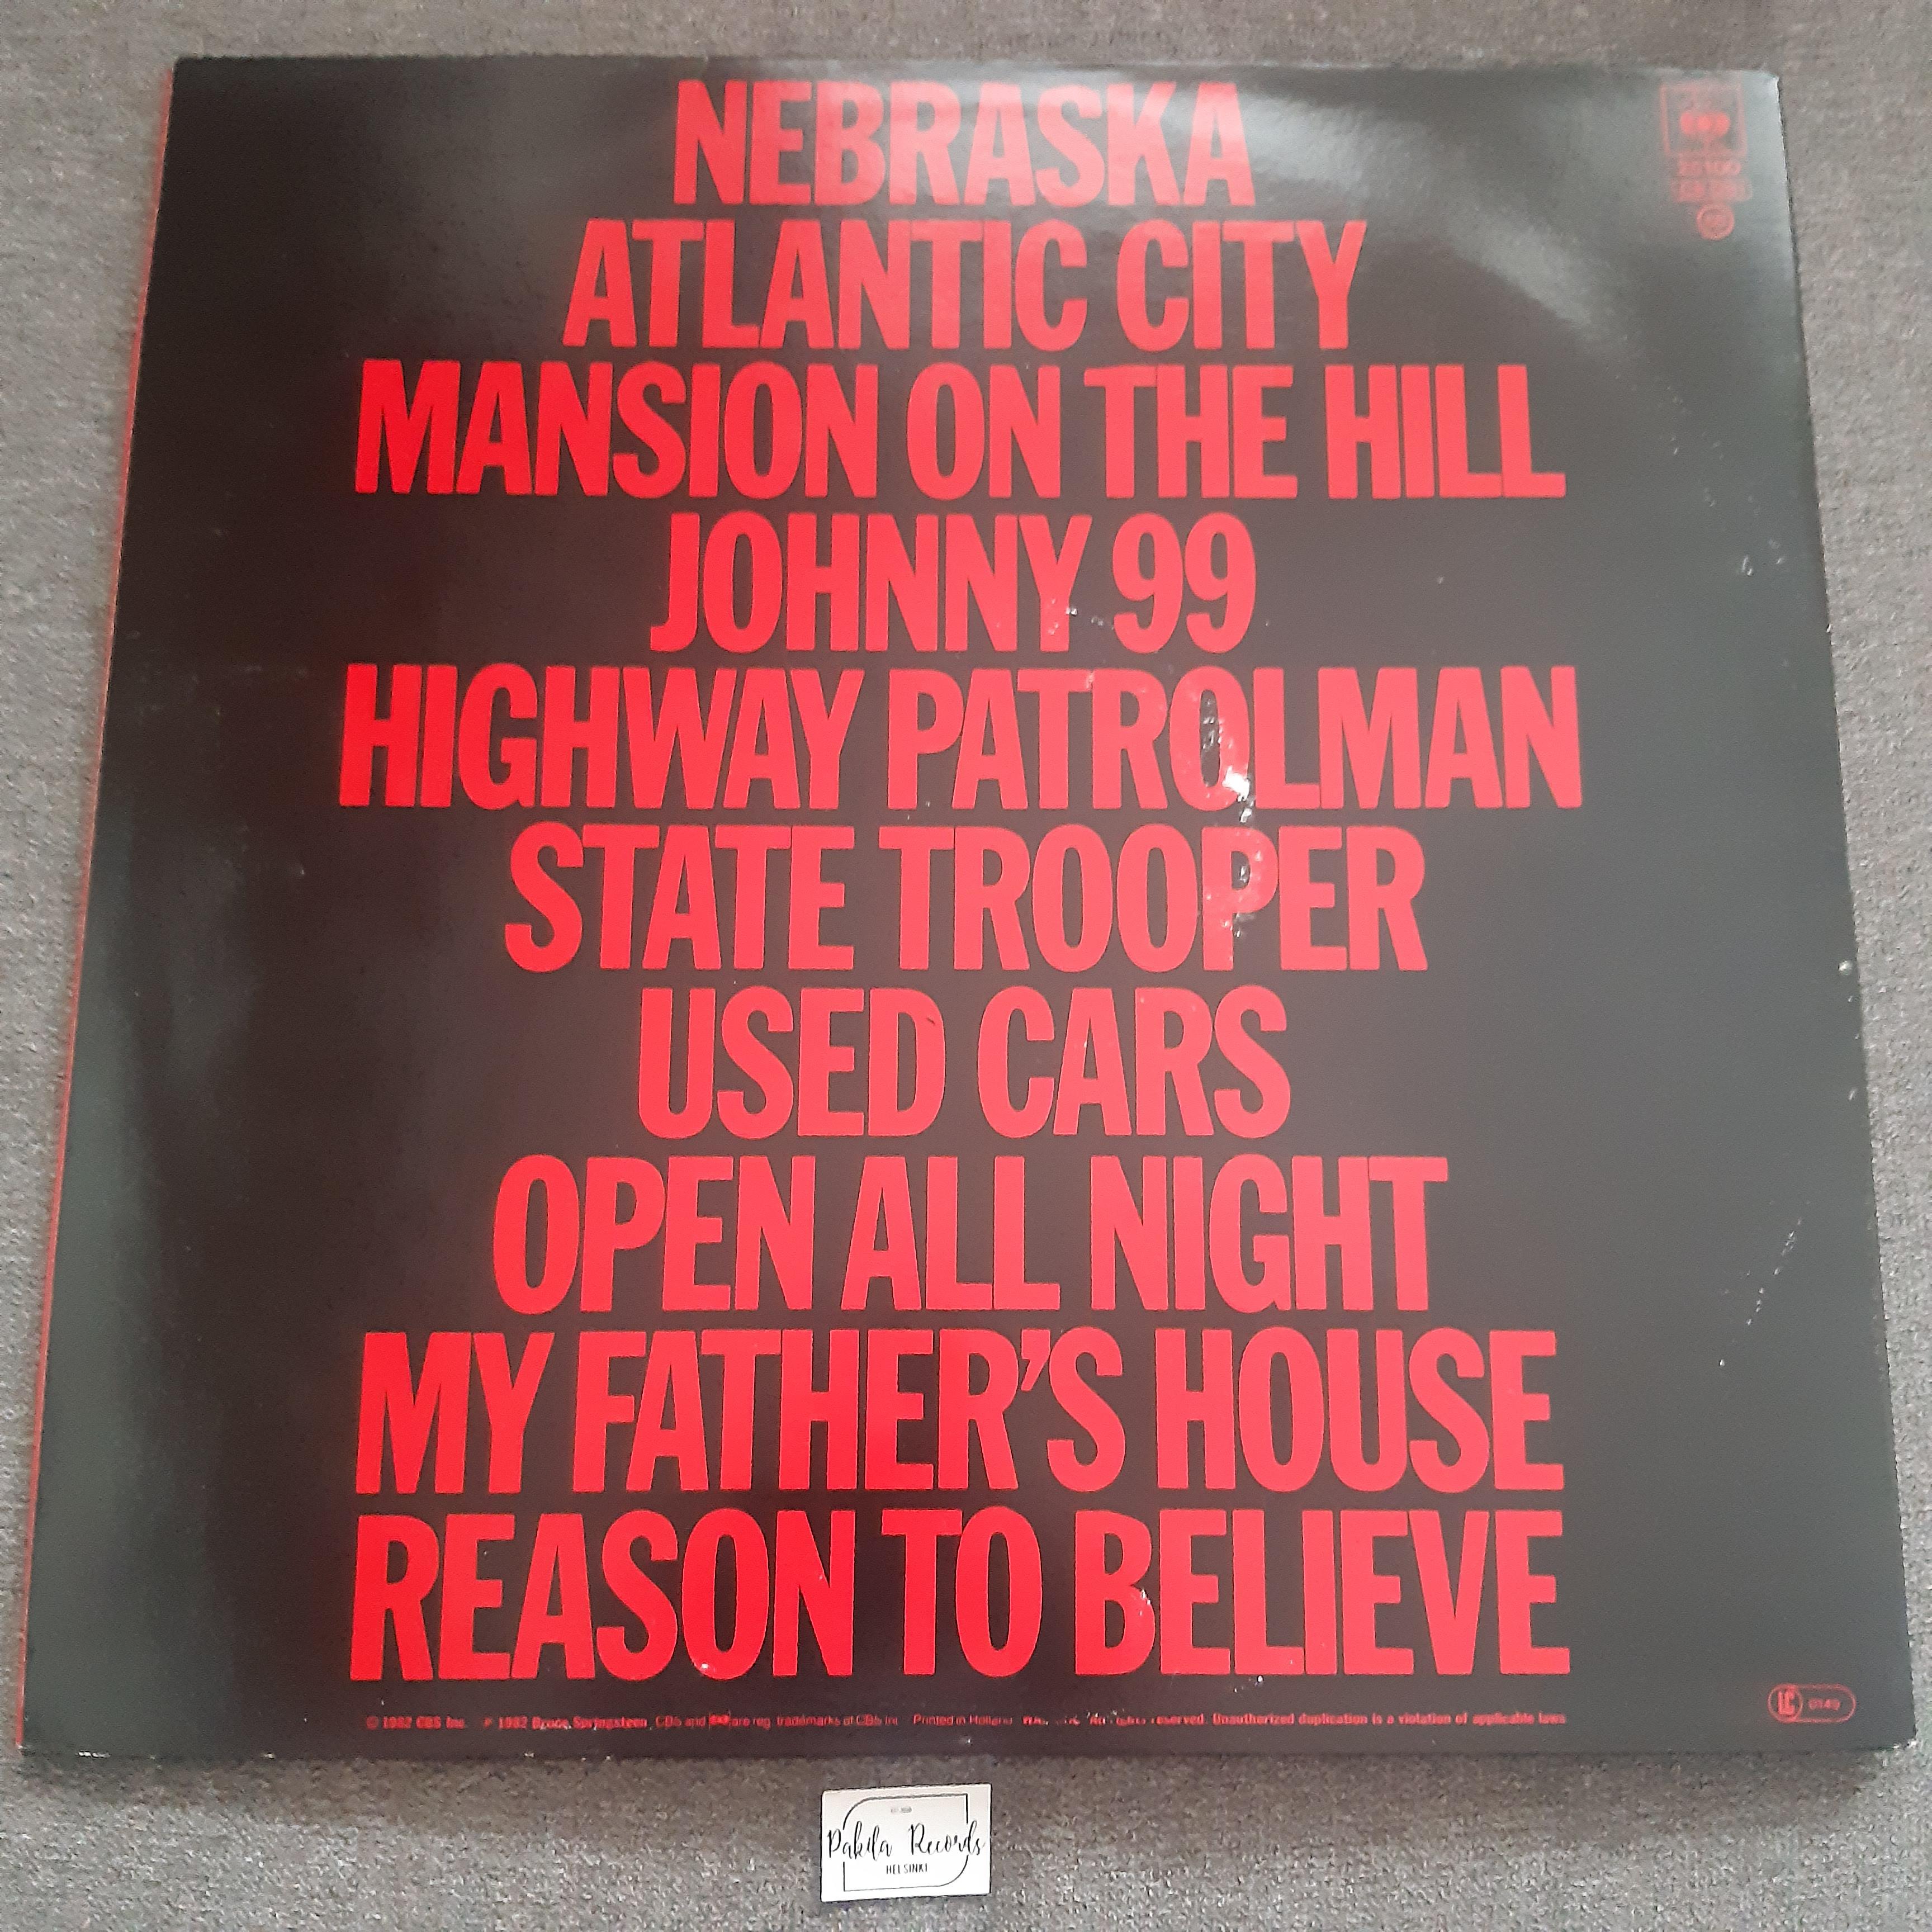 Bruce Springsteen - Nebraska - LP (käytetty)